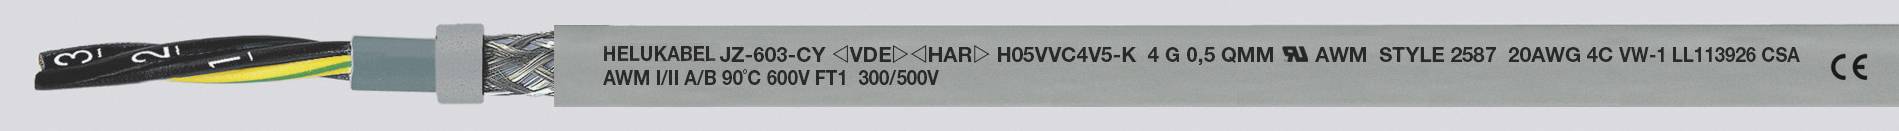 HELUKABEL JZ-603-CY Steuerleitung 5 G 0.50 mm² Grau 83722-500 500 m